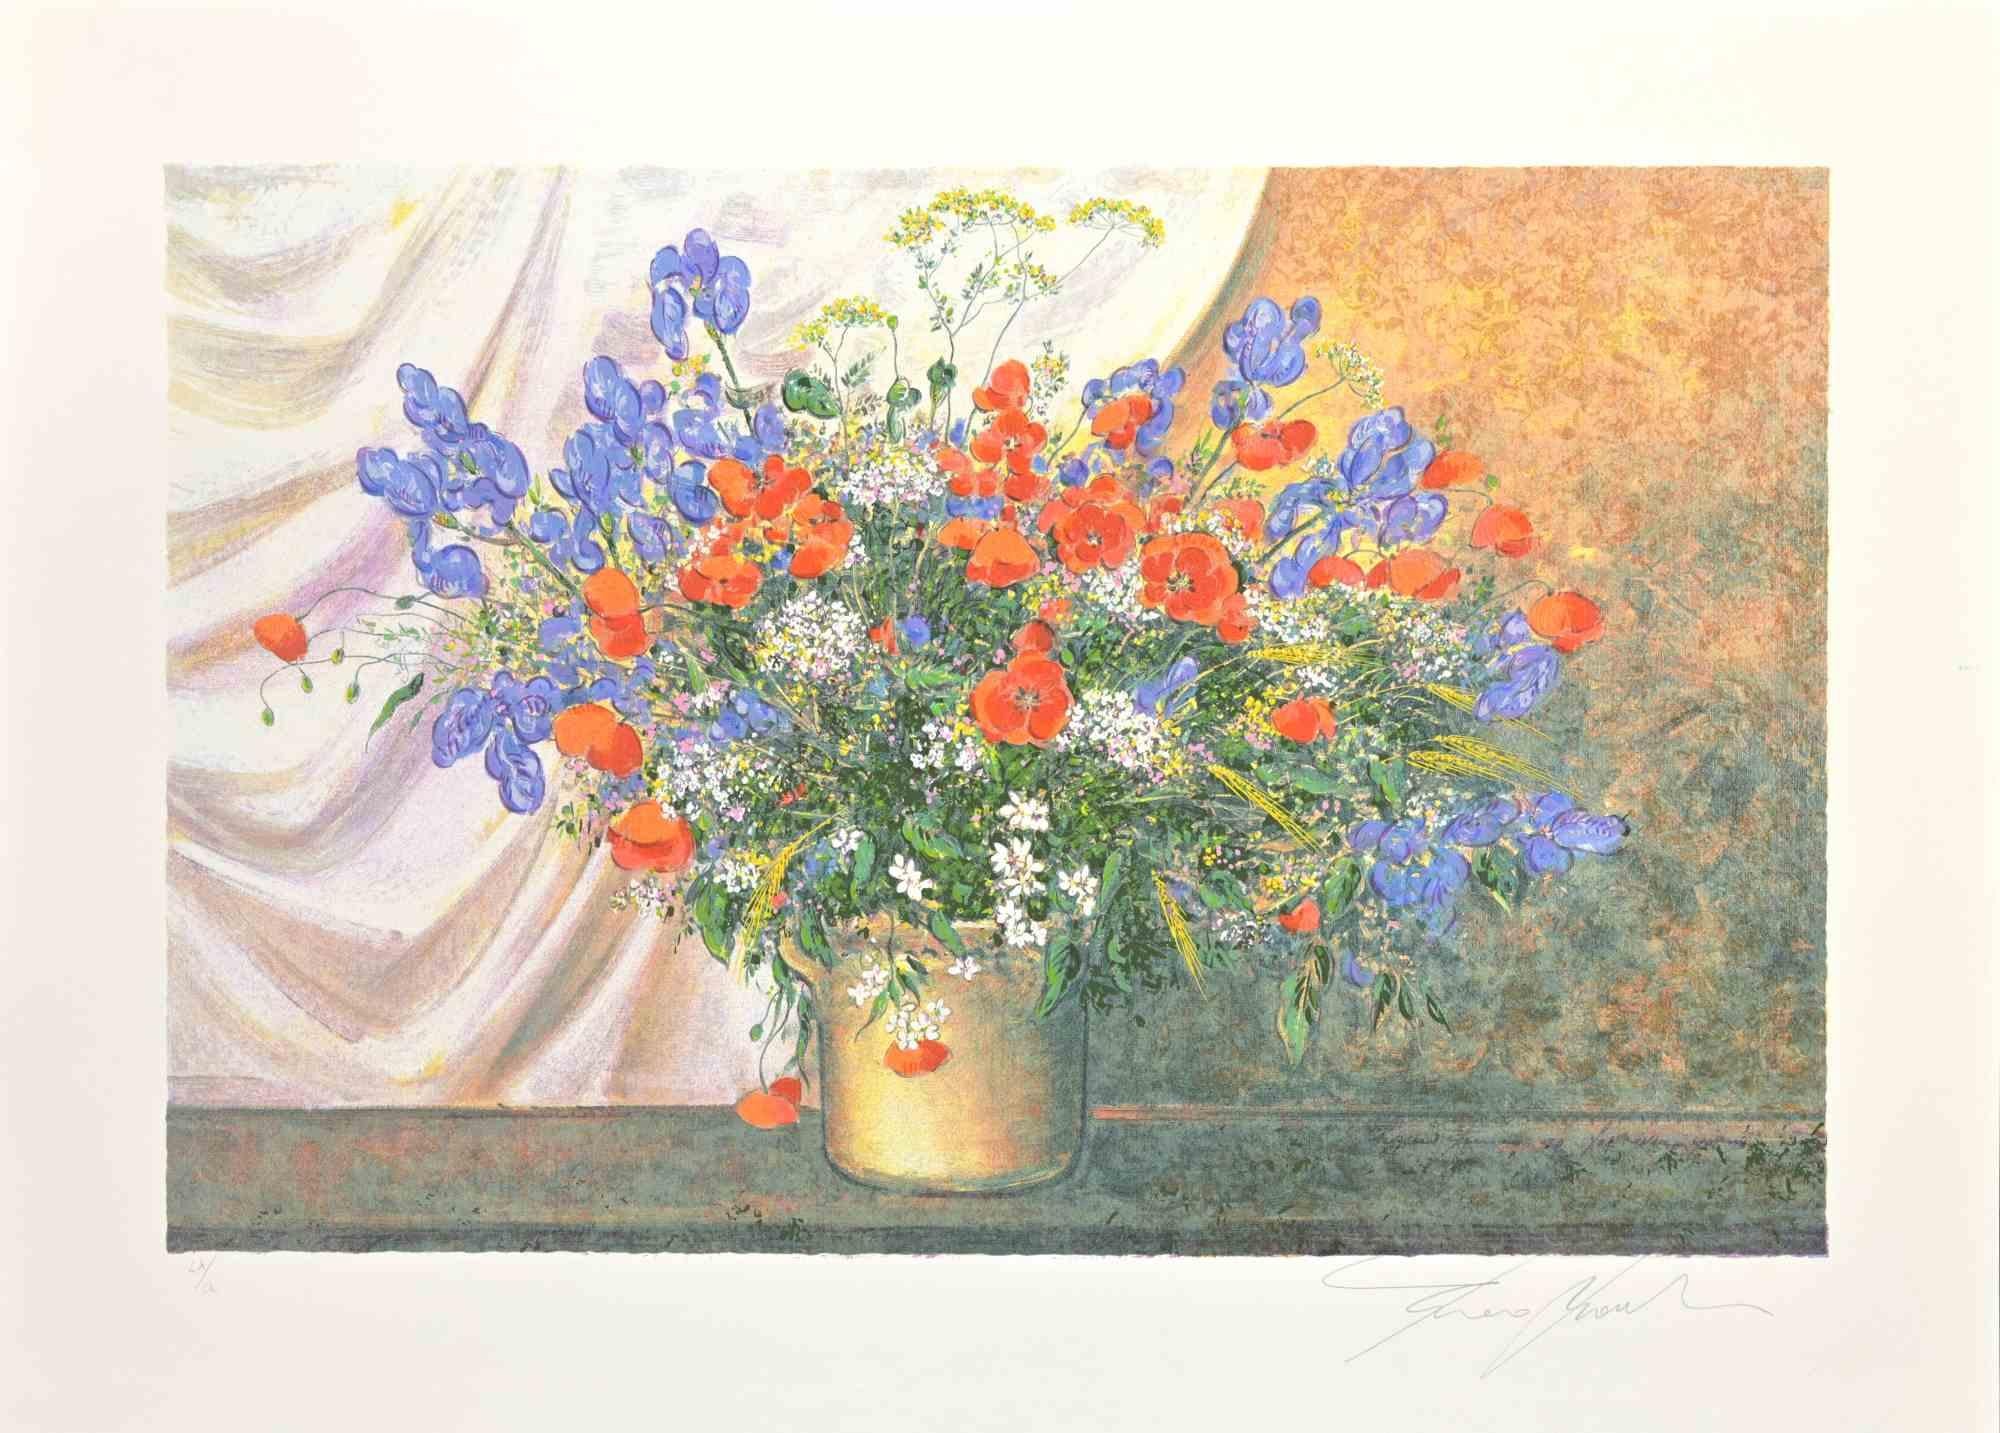 Wildflowers ist ein modernes Kunstwerk von Franco Bocchi aus den 1980er Jahren.

Gemischter farbiger Siebdruck.

Handsigniert am unteren Rand.

 Am linken unteren Rand nummeriert. Auflage: 200 Exemplare.

Franco Bocchi wurde am 25. November 1951 in